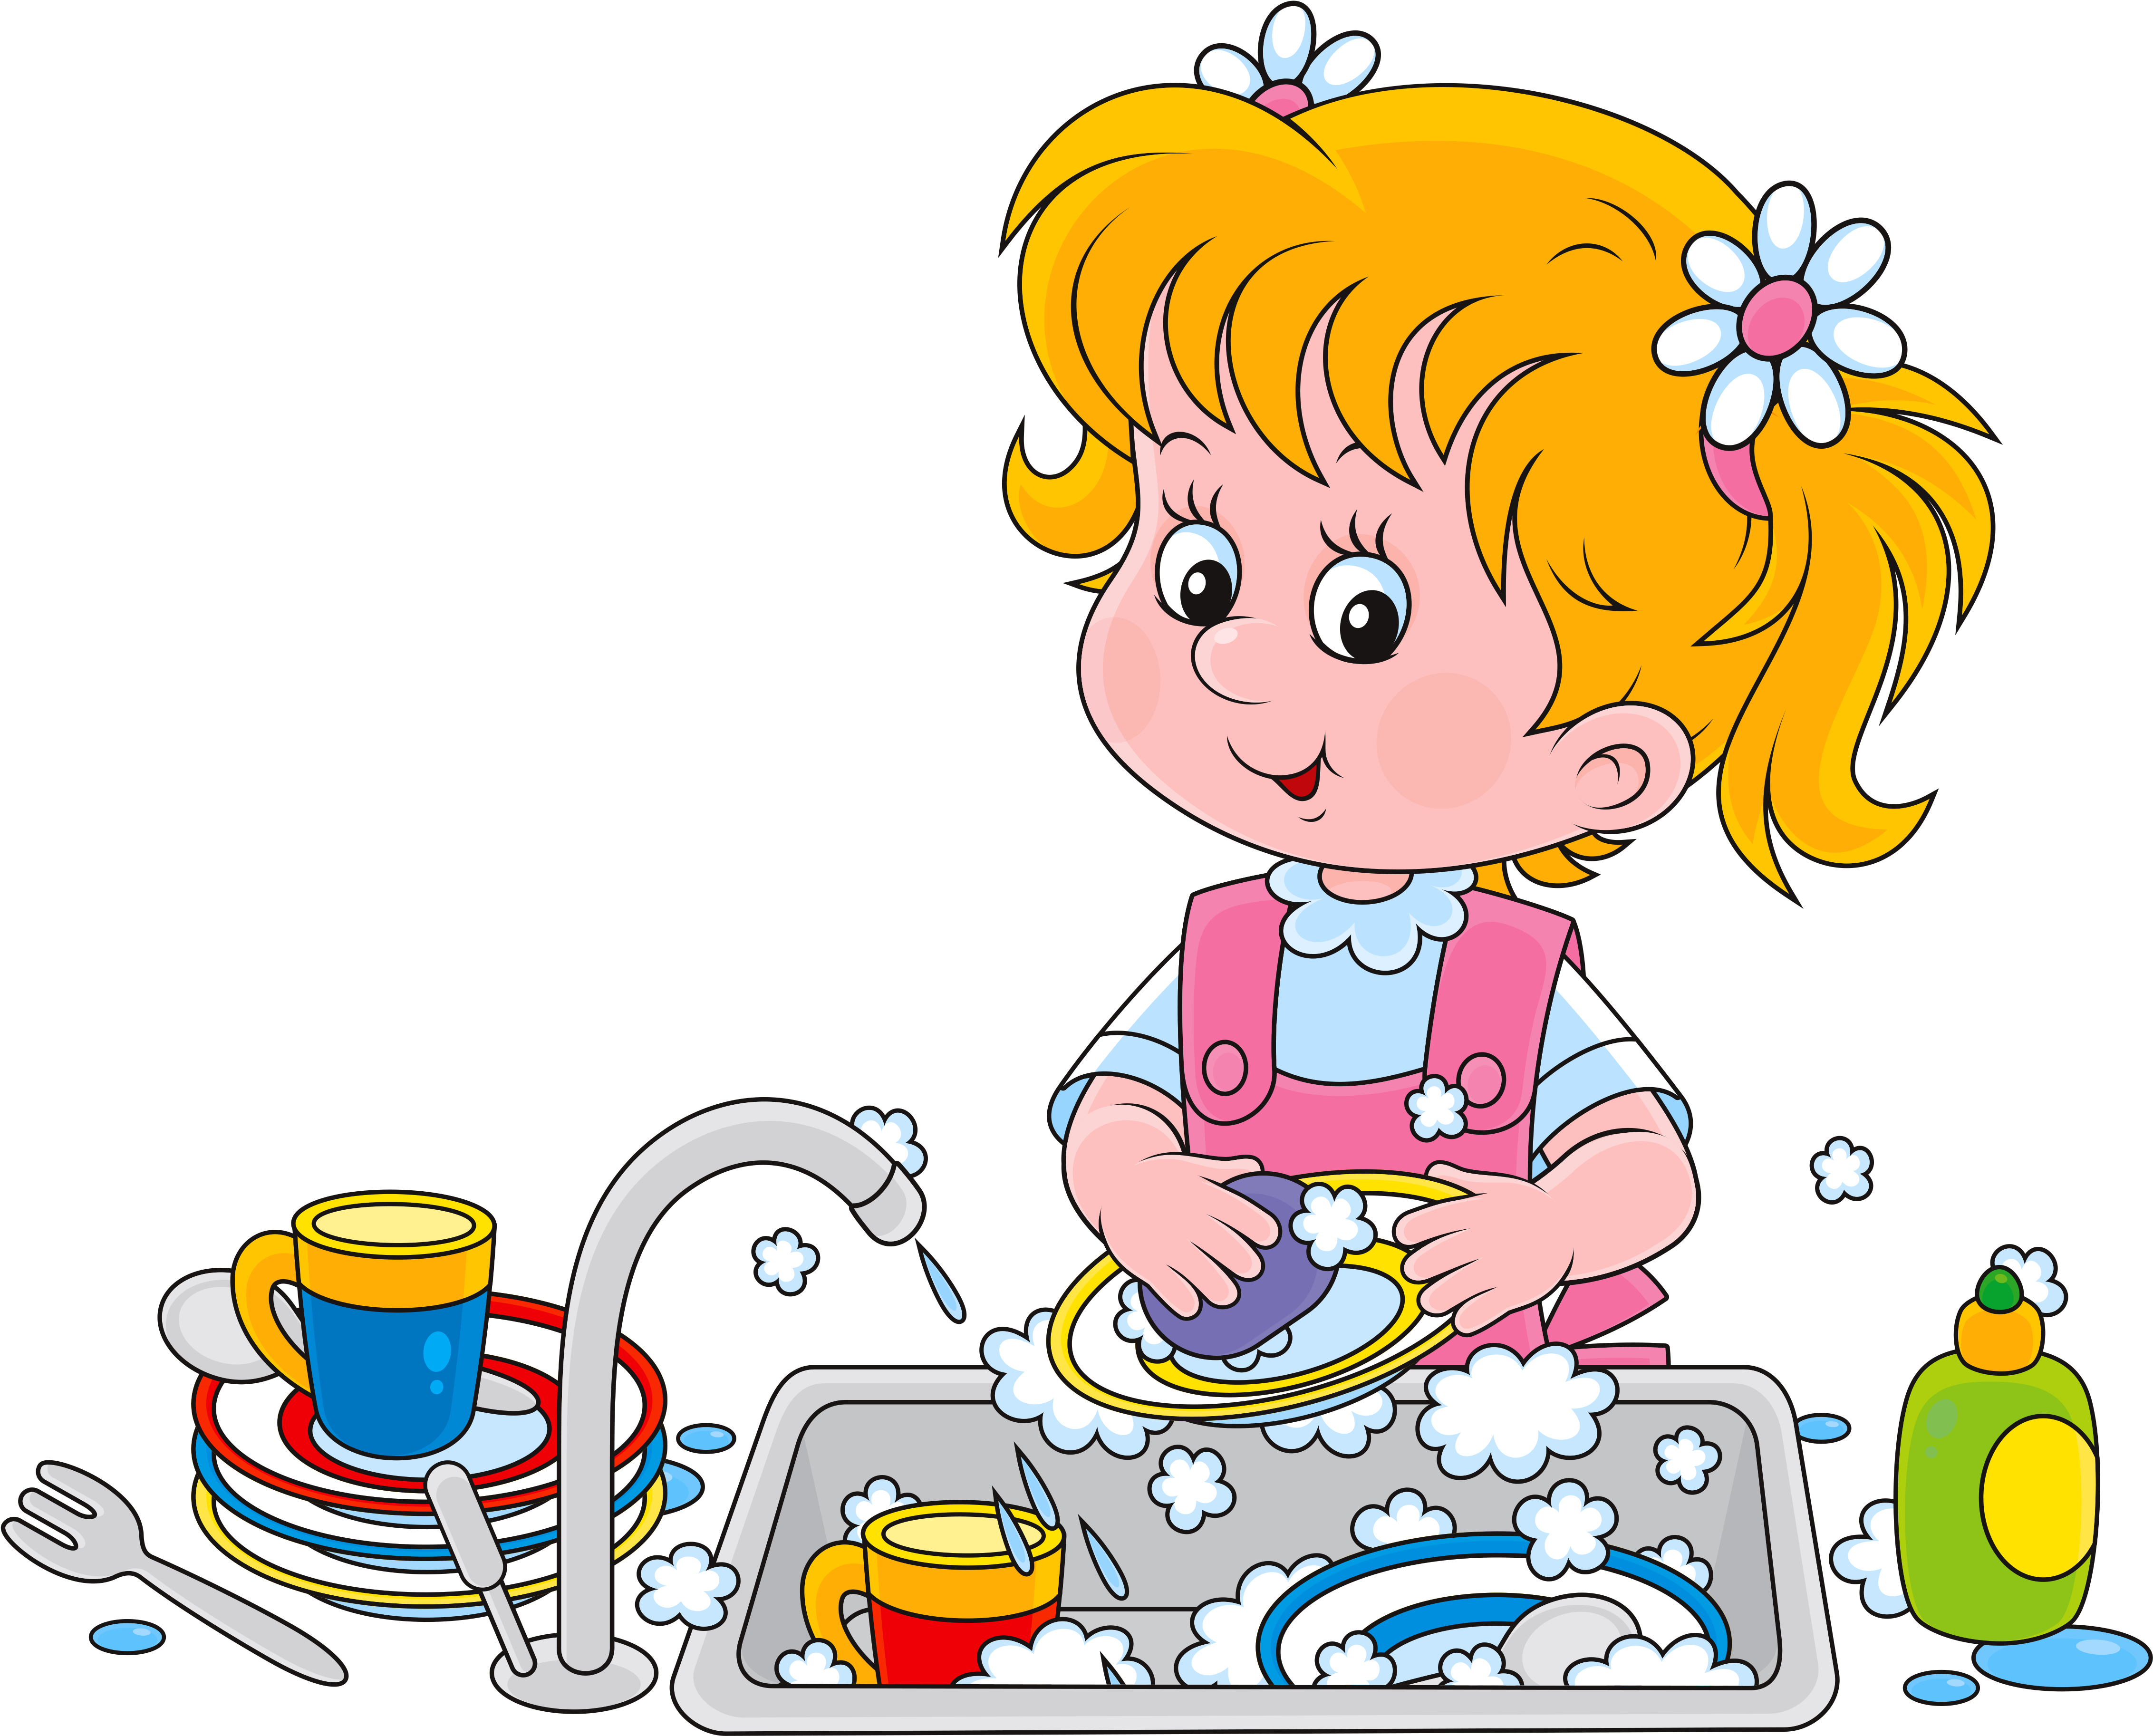 Идти мыть посуду. Дети мамины помощники. Мытье посуды для детей. Девочка моет посуду. Мытье посуды иллюстрации для детей.